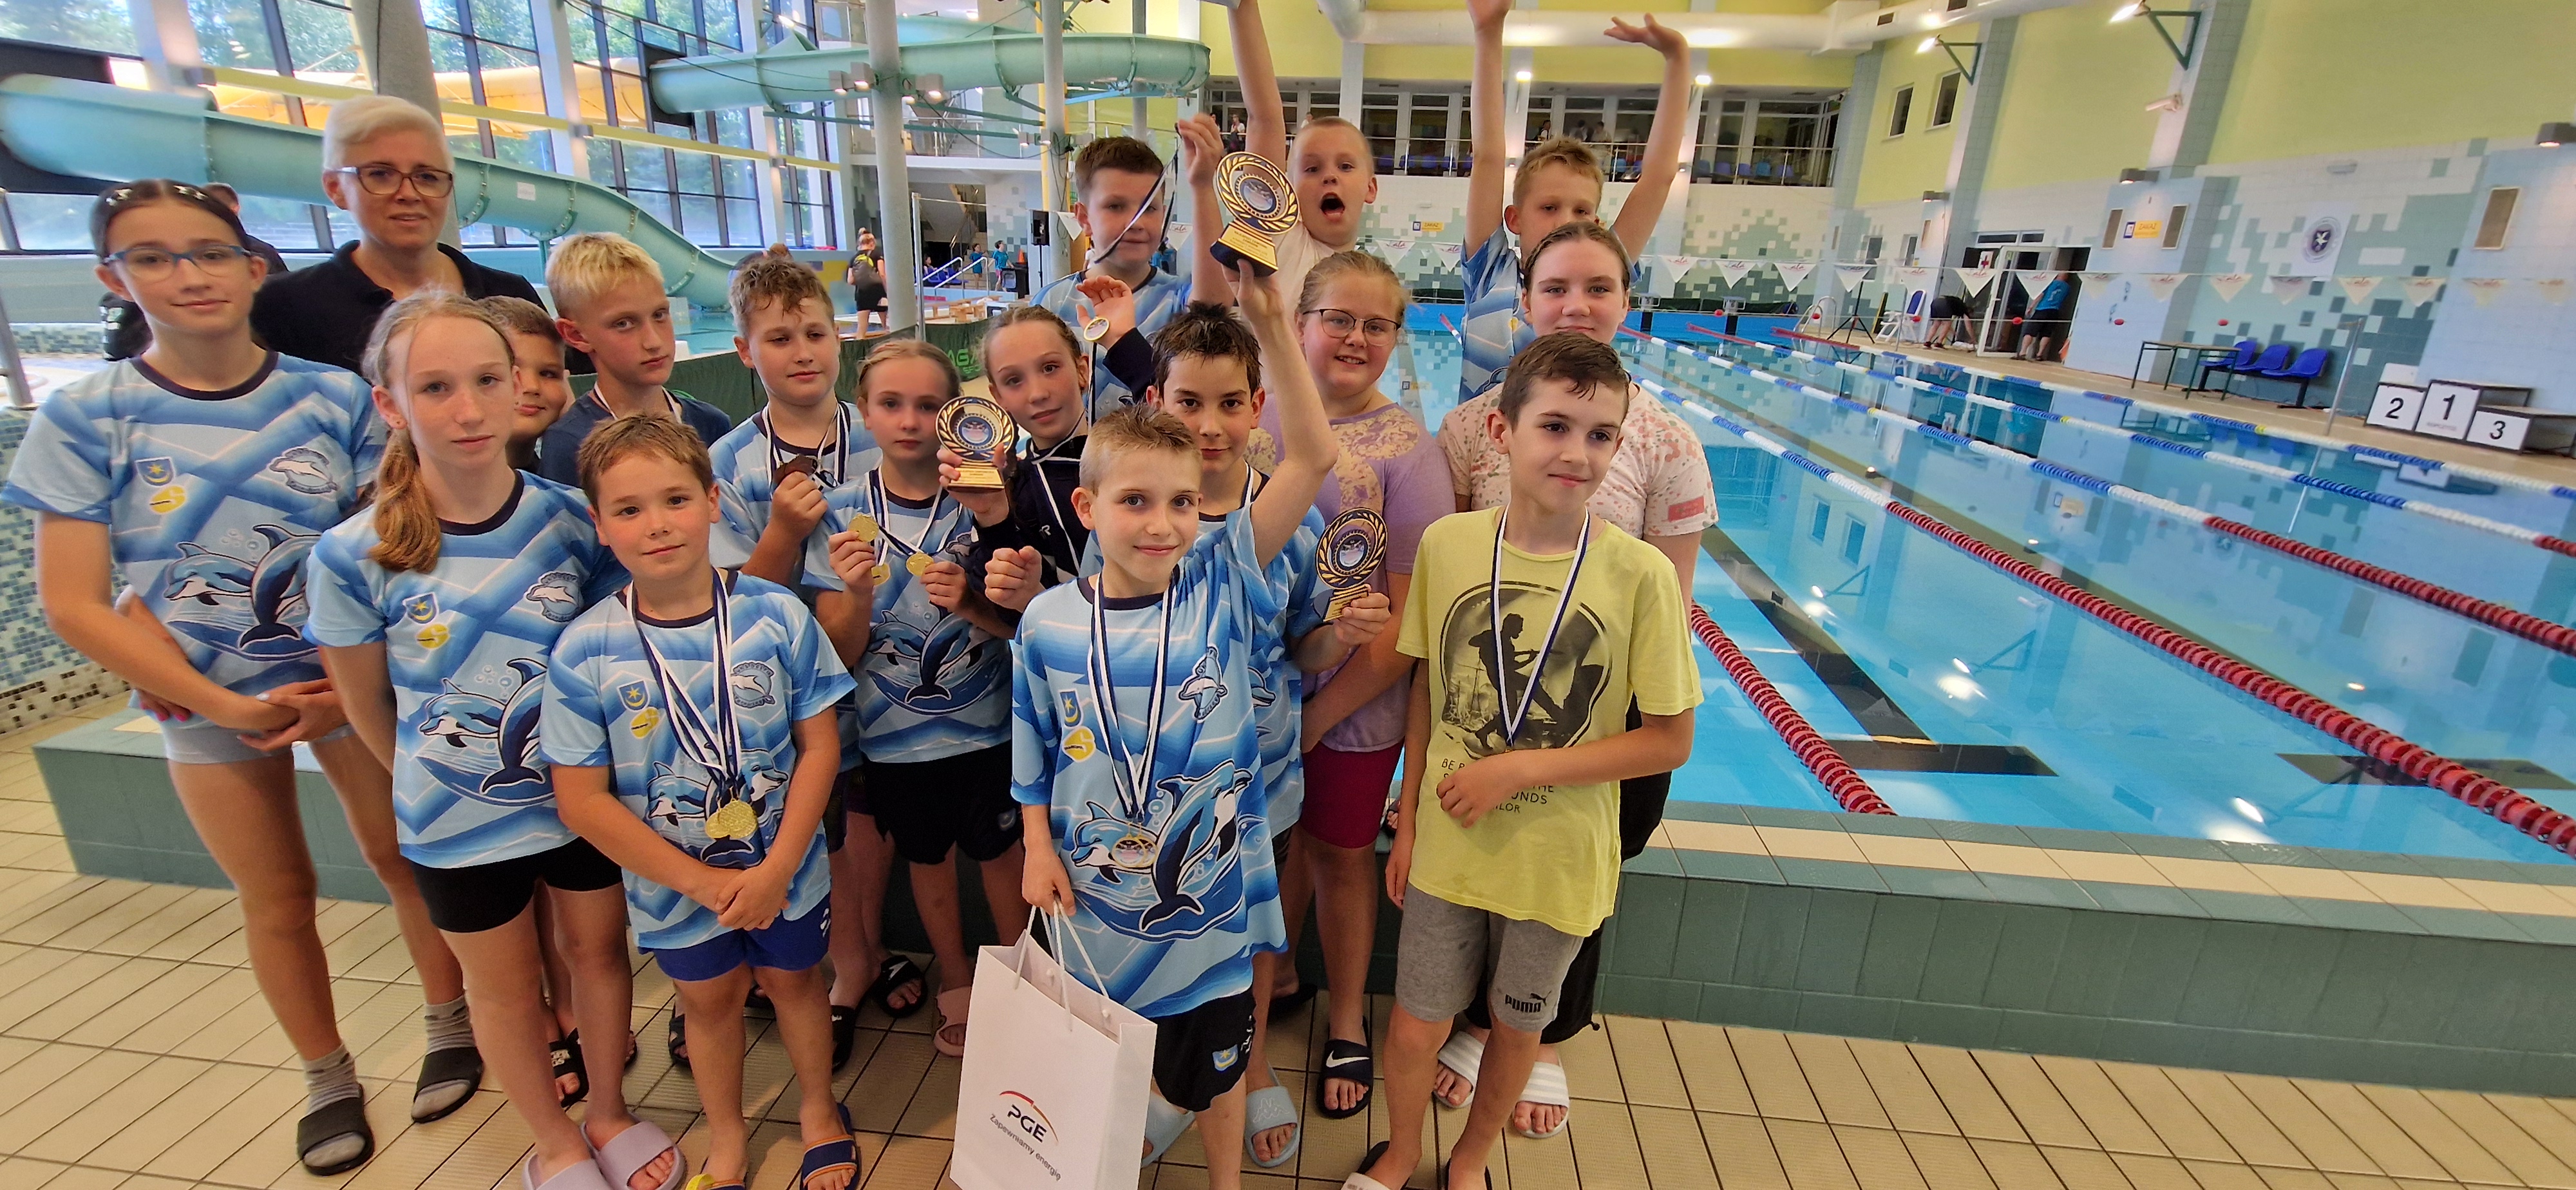 28 medali UKS Delfin Tarnobrzeg w zawodach Pływackich Dzieci w Ropczycach!